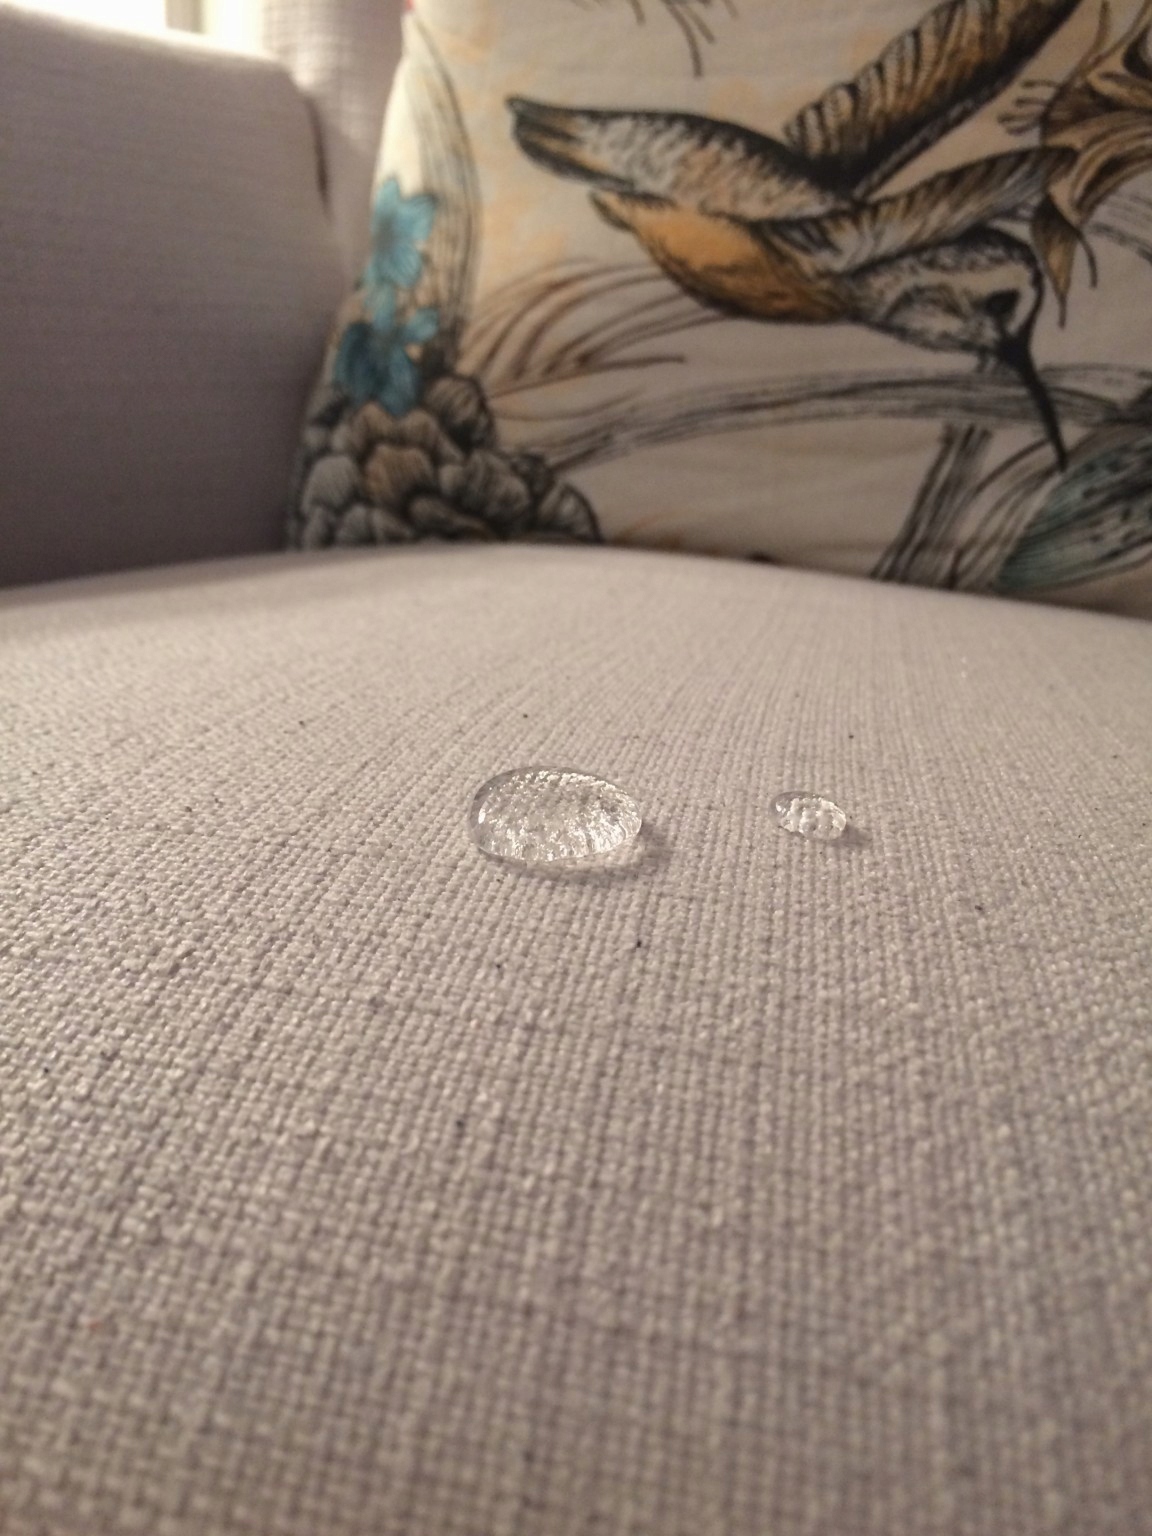 непромокаемая ткань на диван